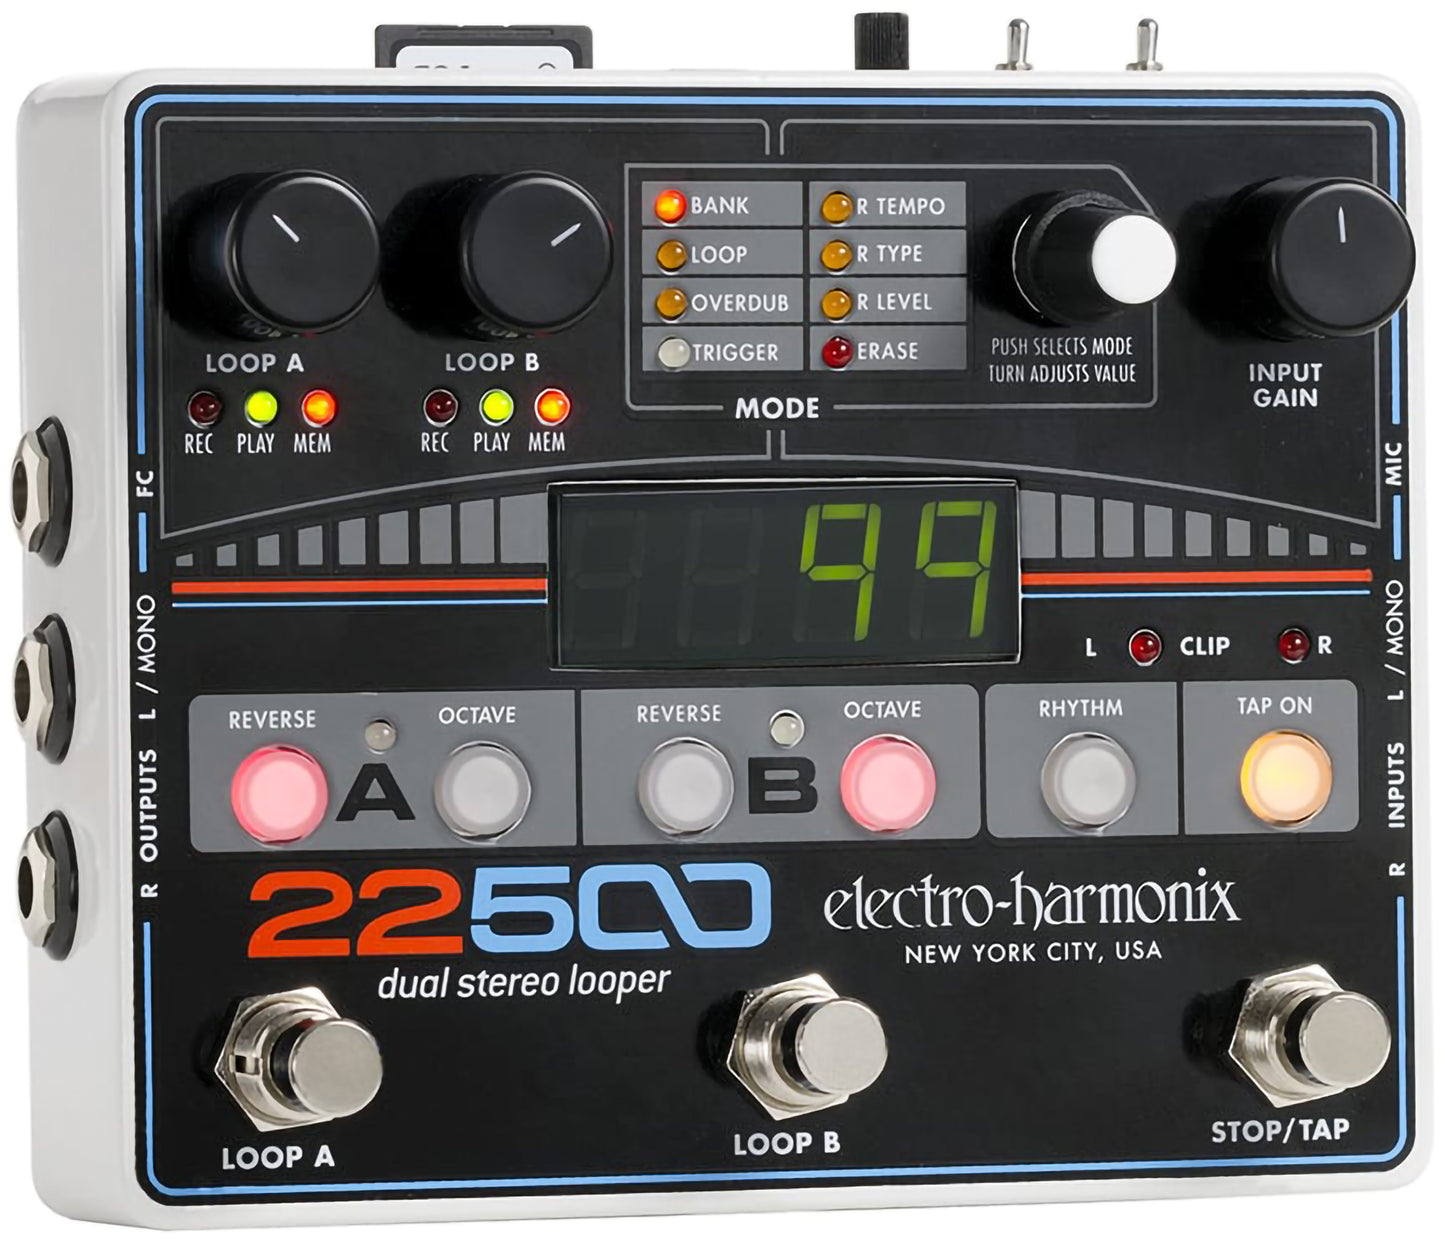 Electro Harmonix 22500 Looper Pedal